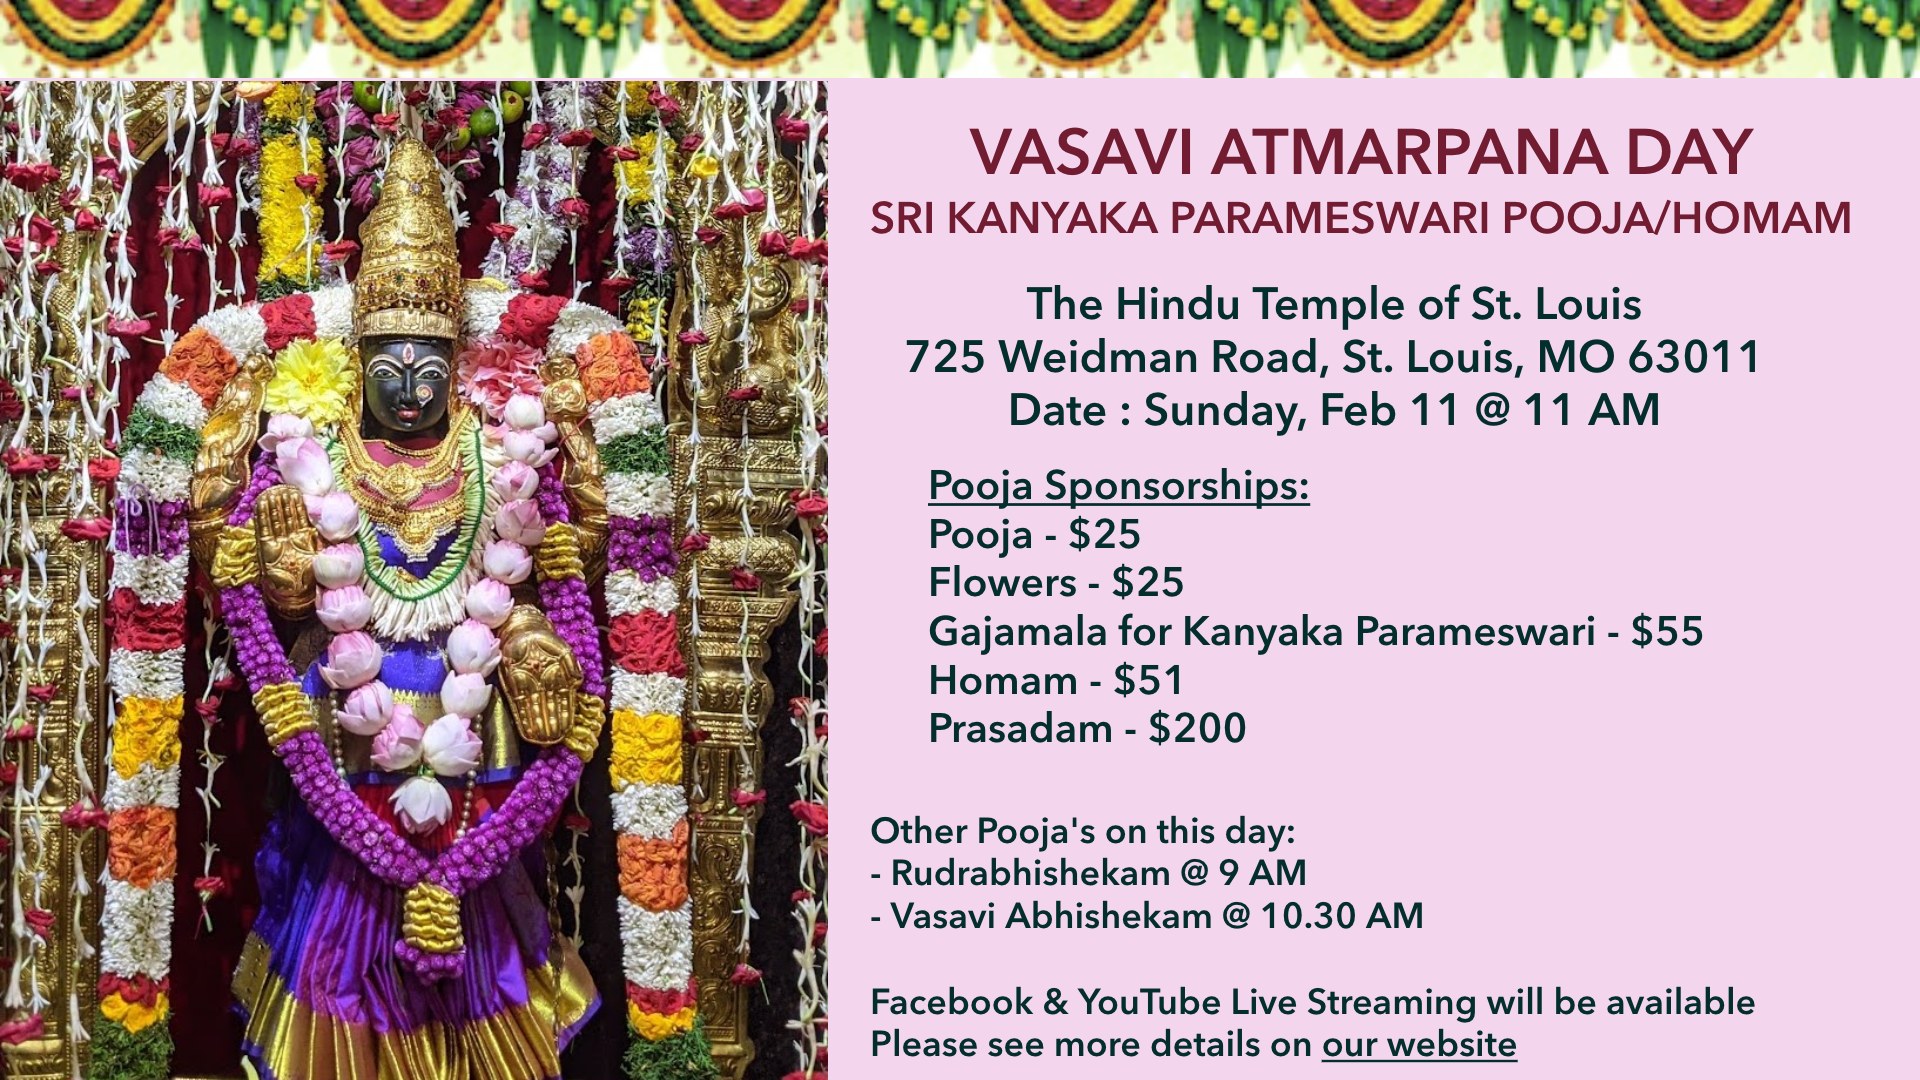 Vasavi Atmarpana Day – 02/11 @ 11 AM